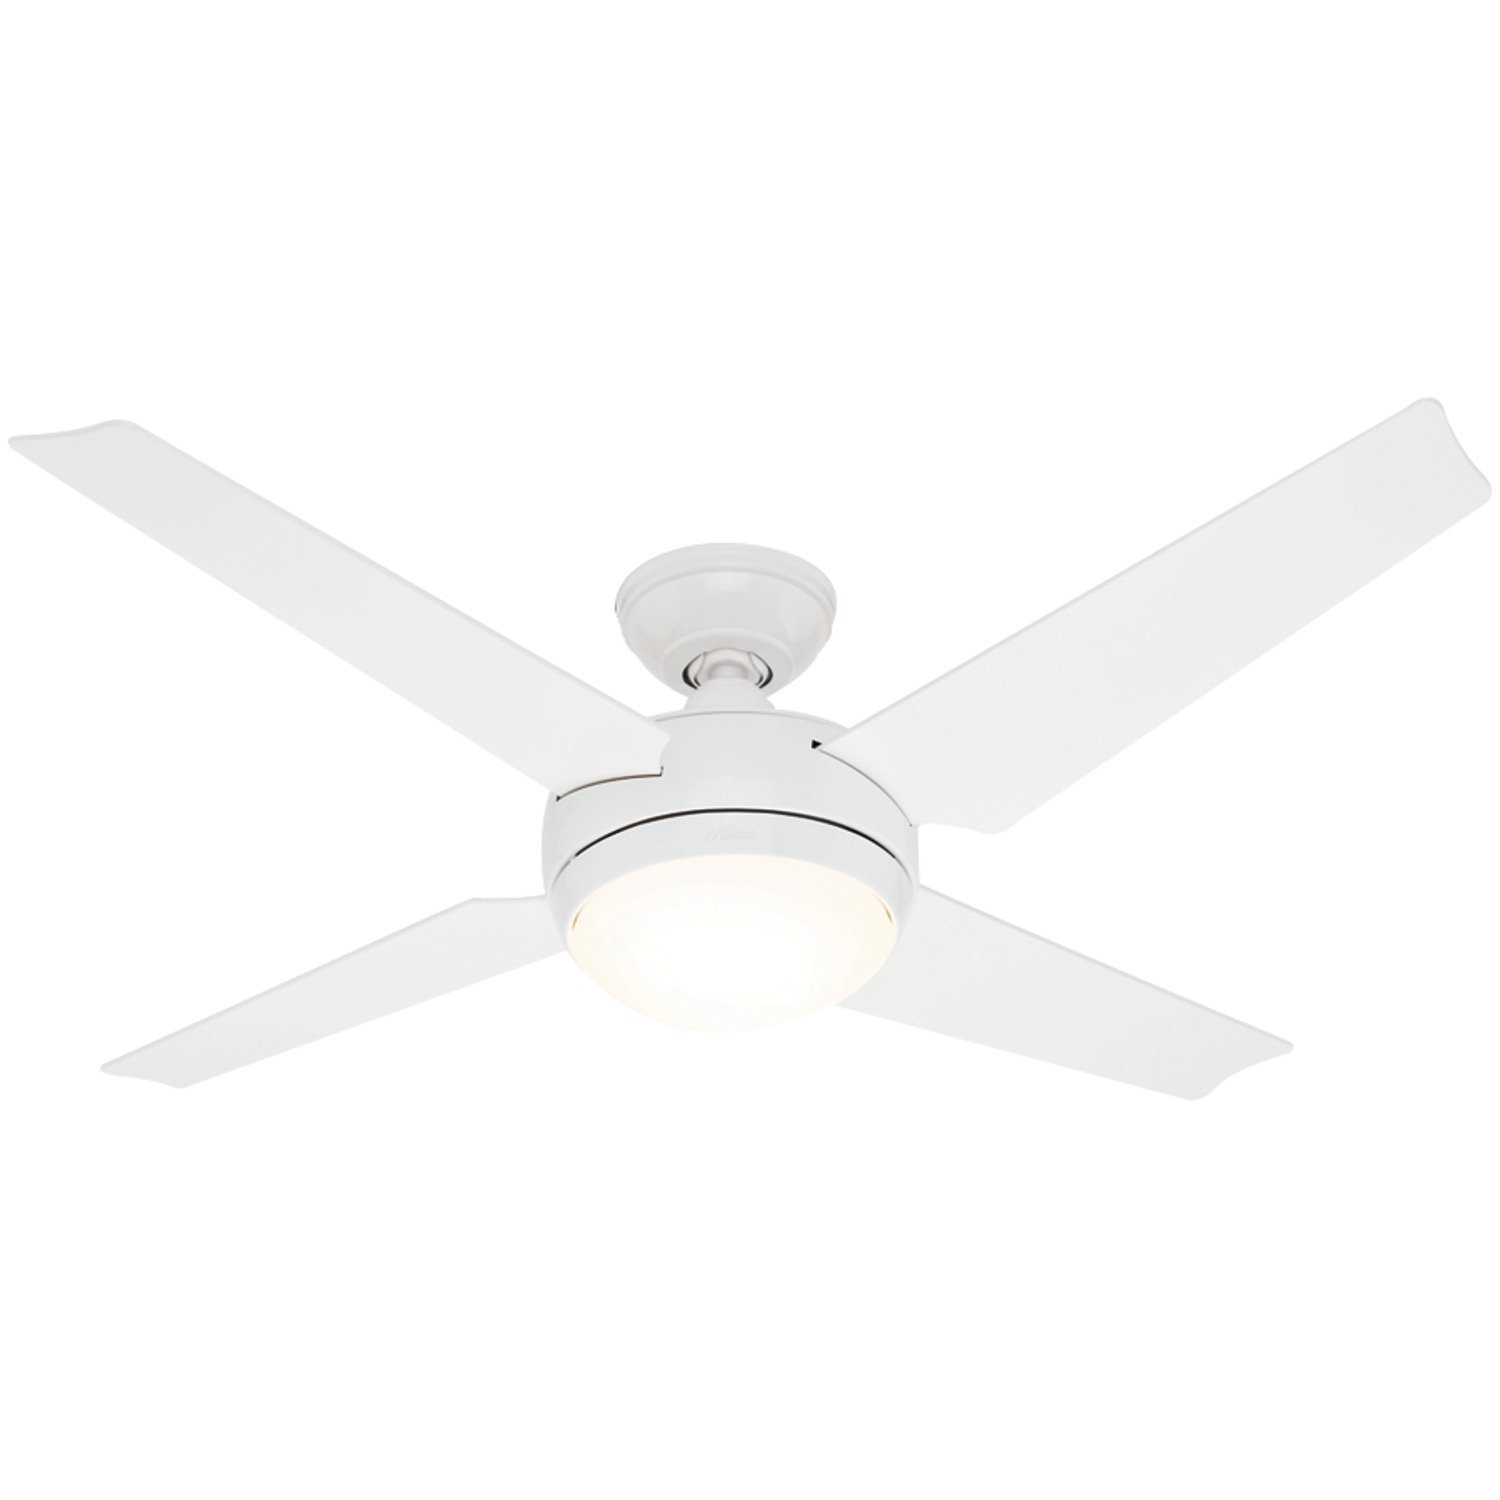 White Ceiling Fan Light Kit10 benefits of white ceiling fan light kit warisan lighting